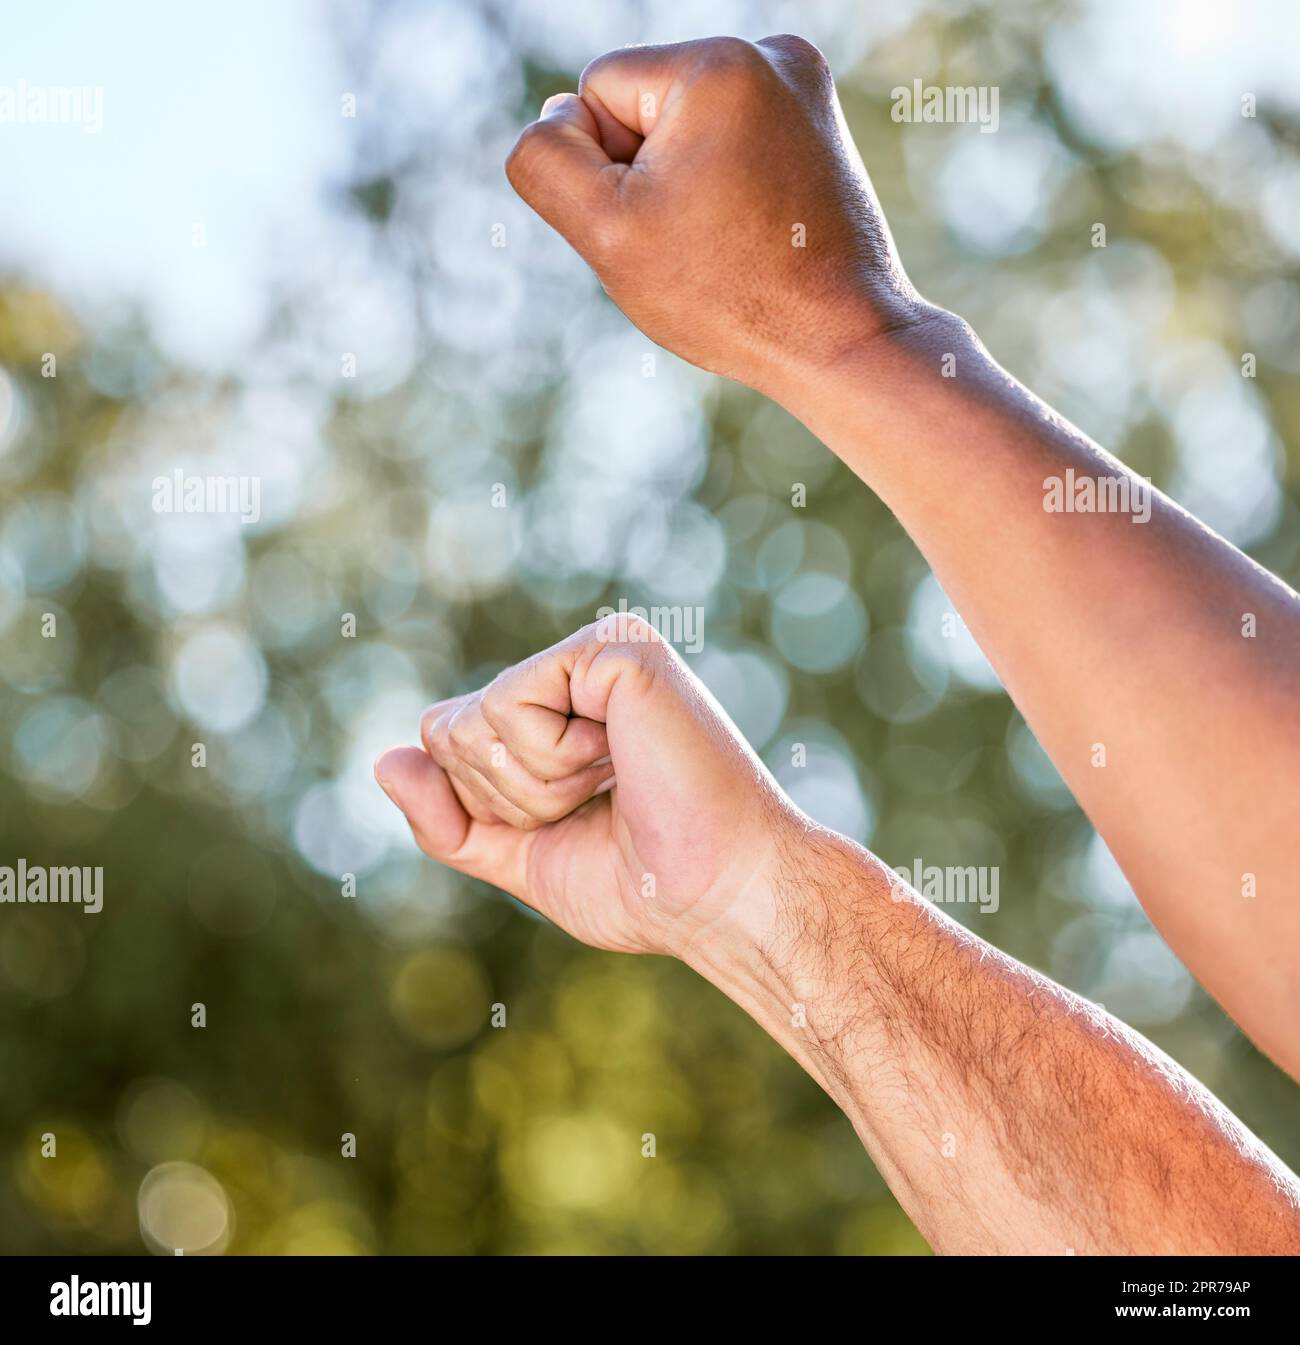 Kämpft weiter. Aufnahme von zwei unverkennbaren Männern, die im Freien ihre Fäuste hochheben, um sich zu trotzen. Stockfoto